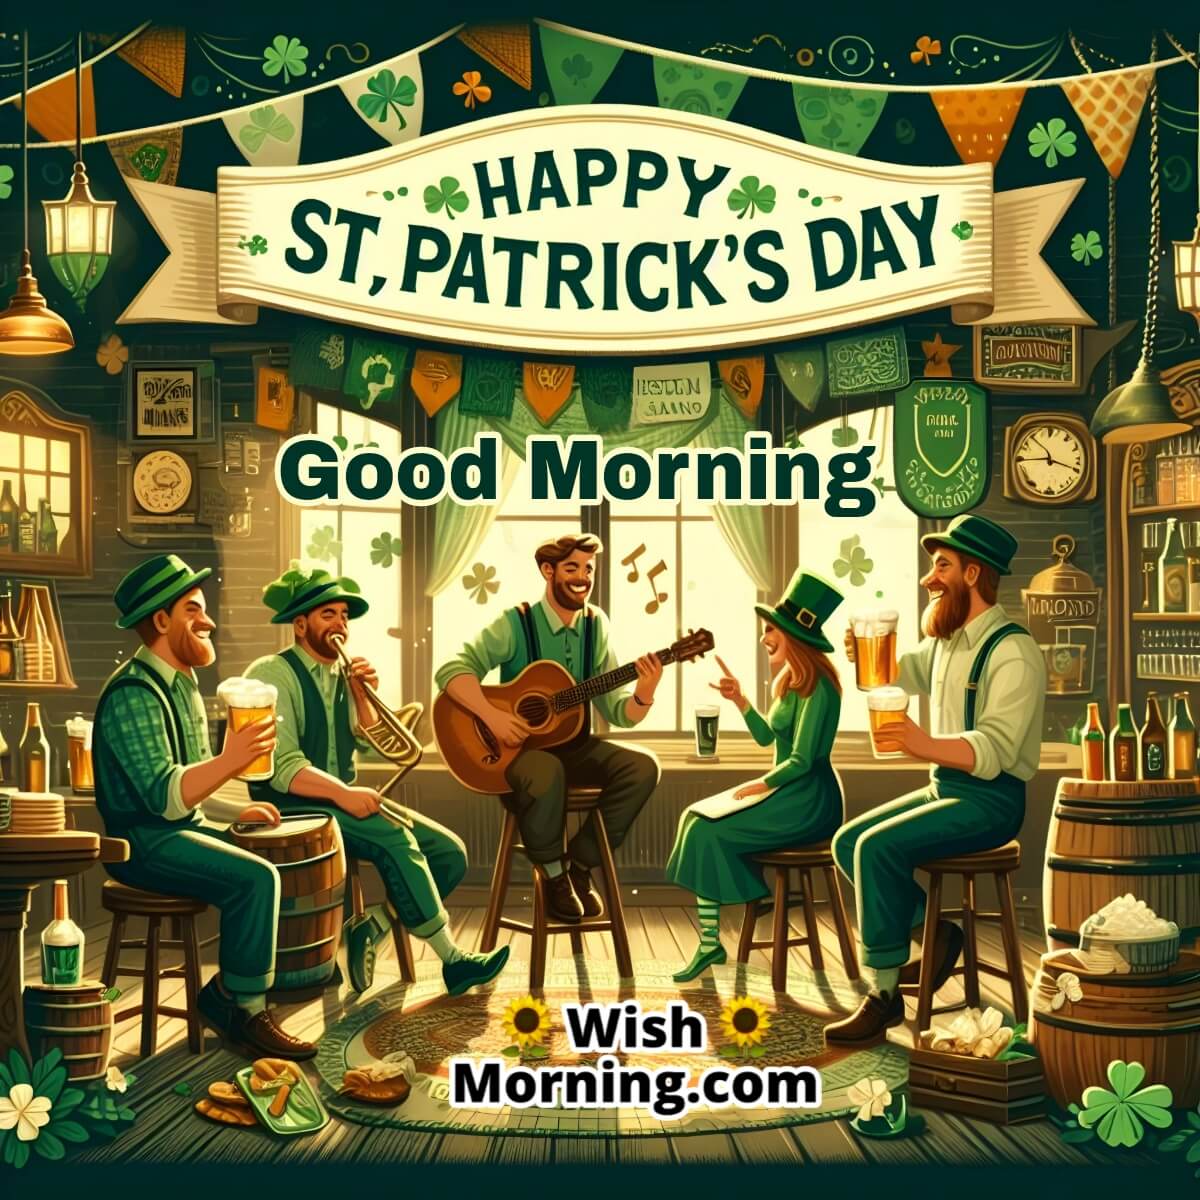 Good Morning St. Patrick's Day Irish Pub